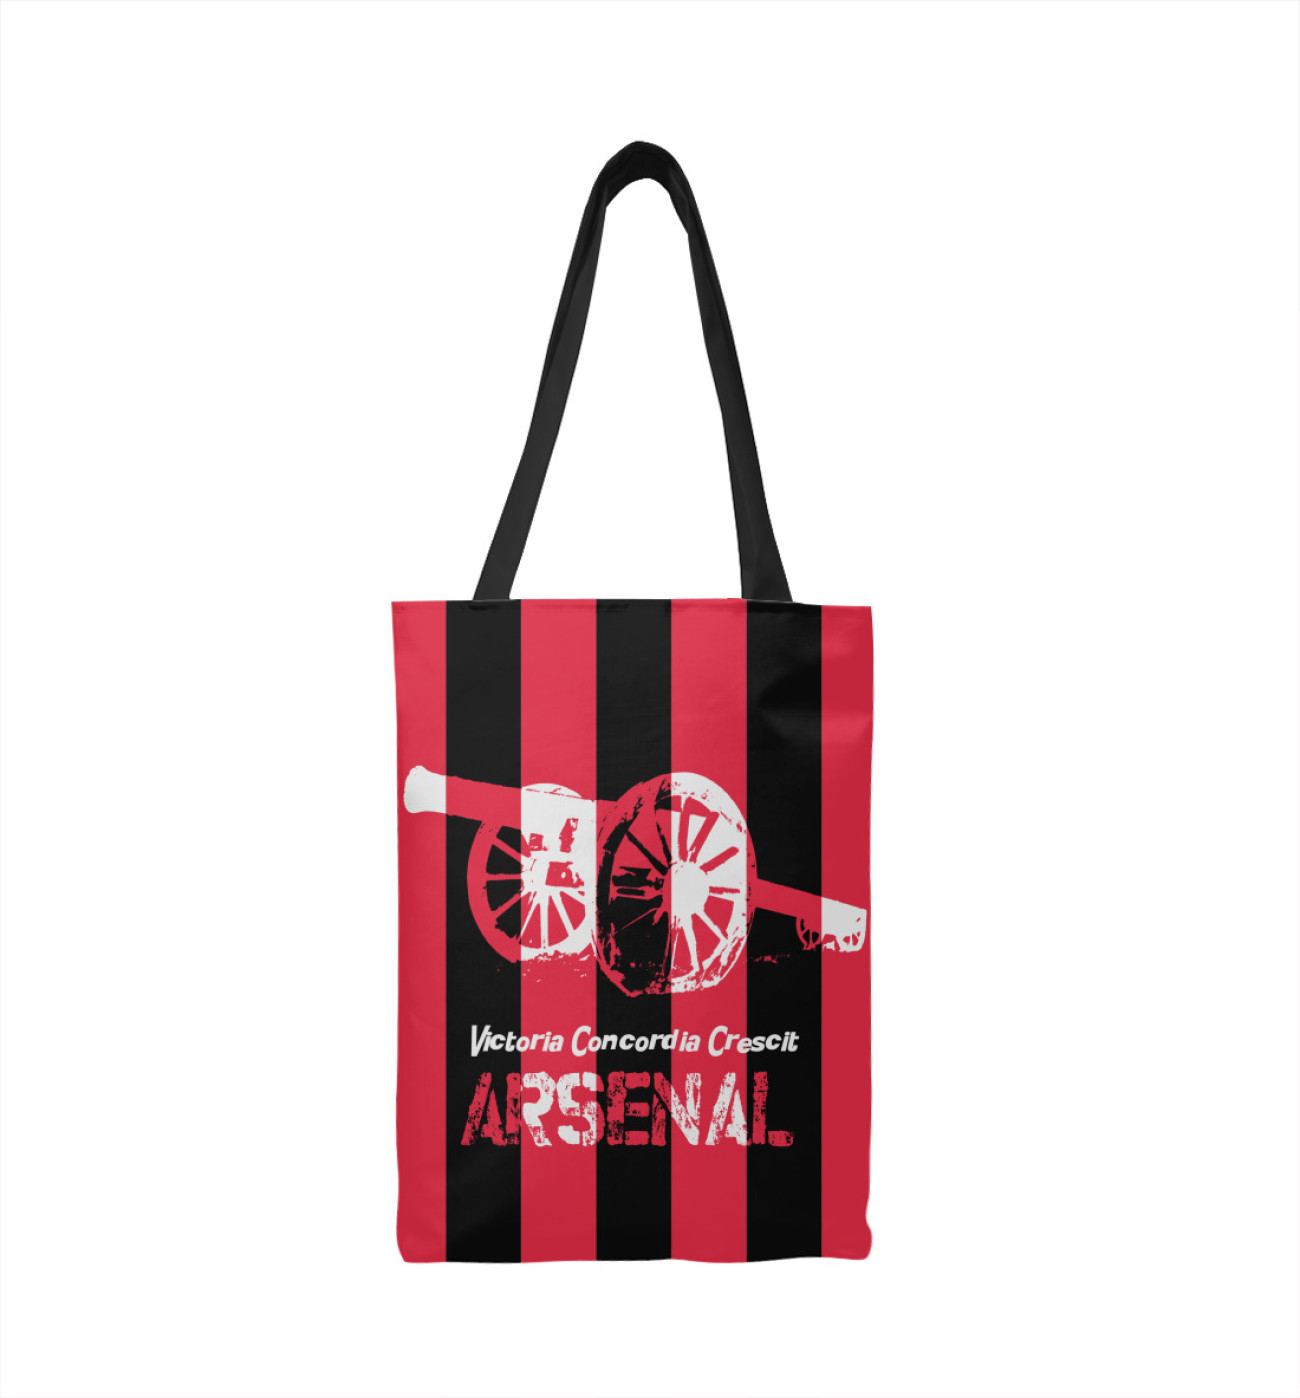  Сумка-шоппер FC Arsenal, артикул: ARS-572563-sus